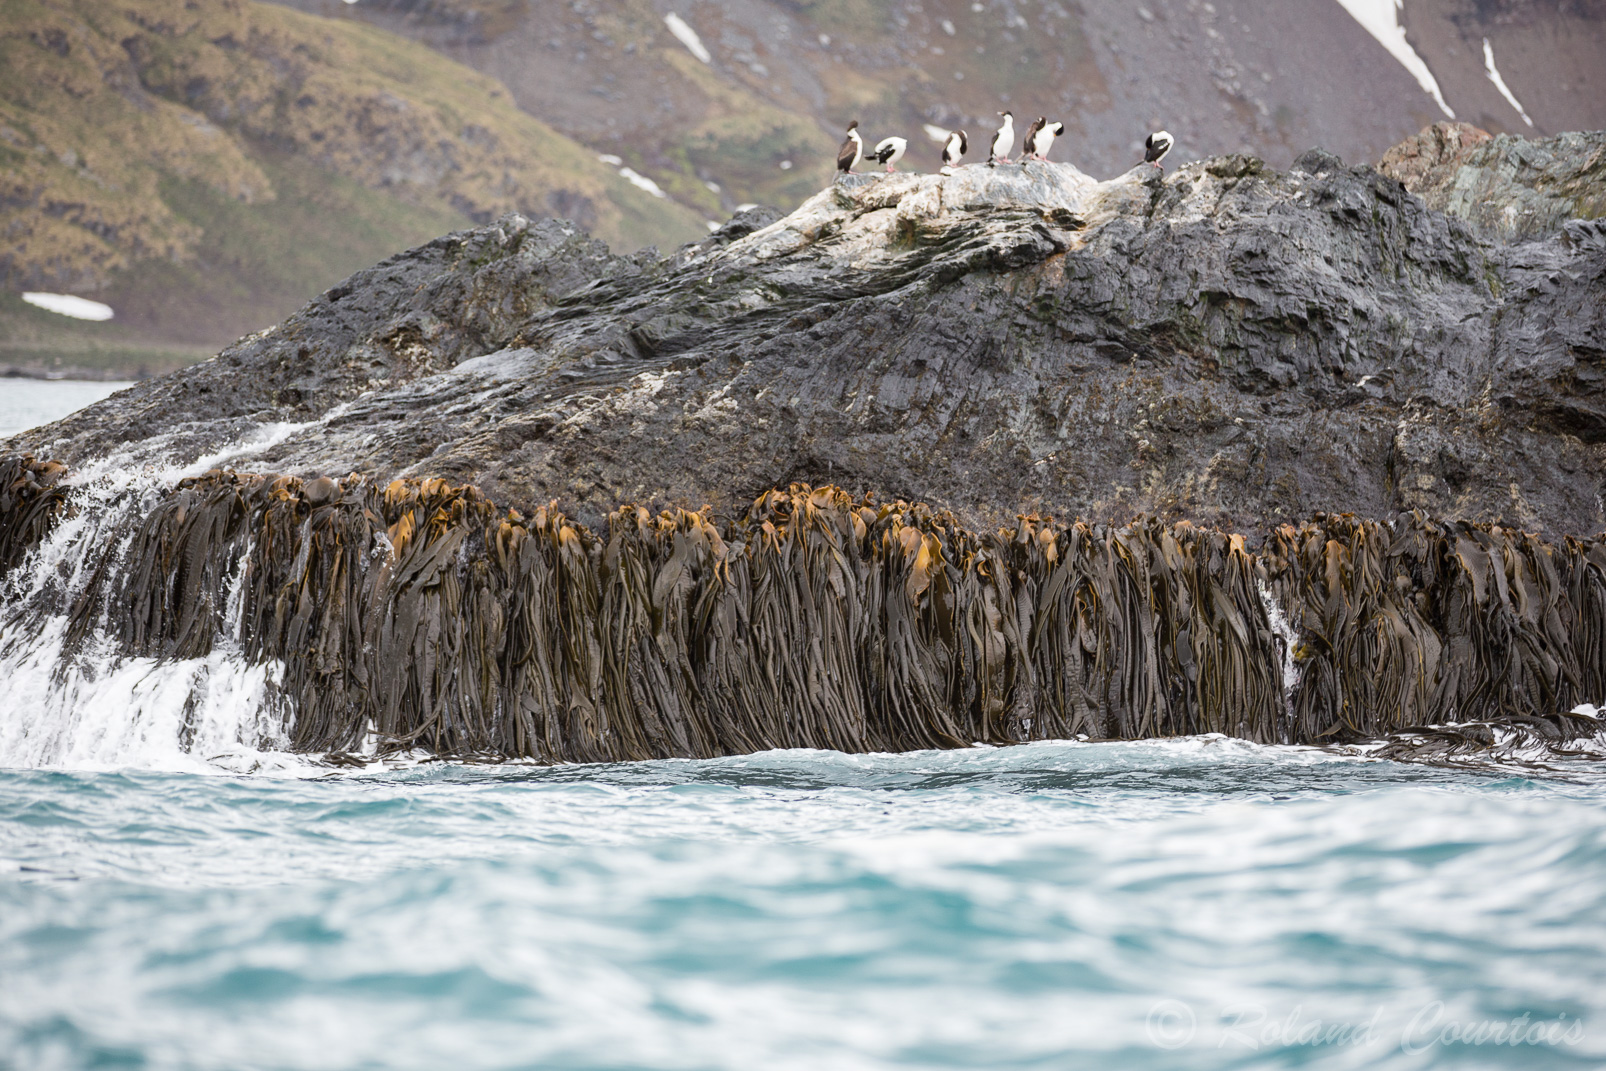 Ces algues marines accrochées aux rochers font plusieurs mètres de longueur.